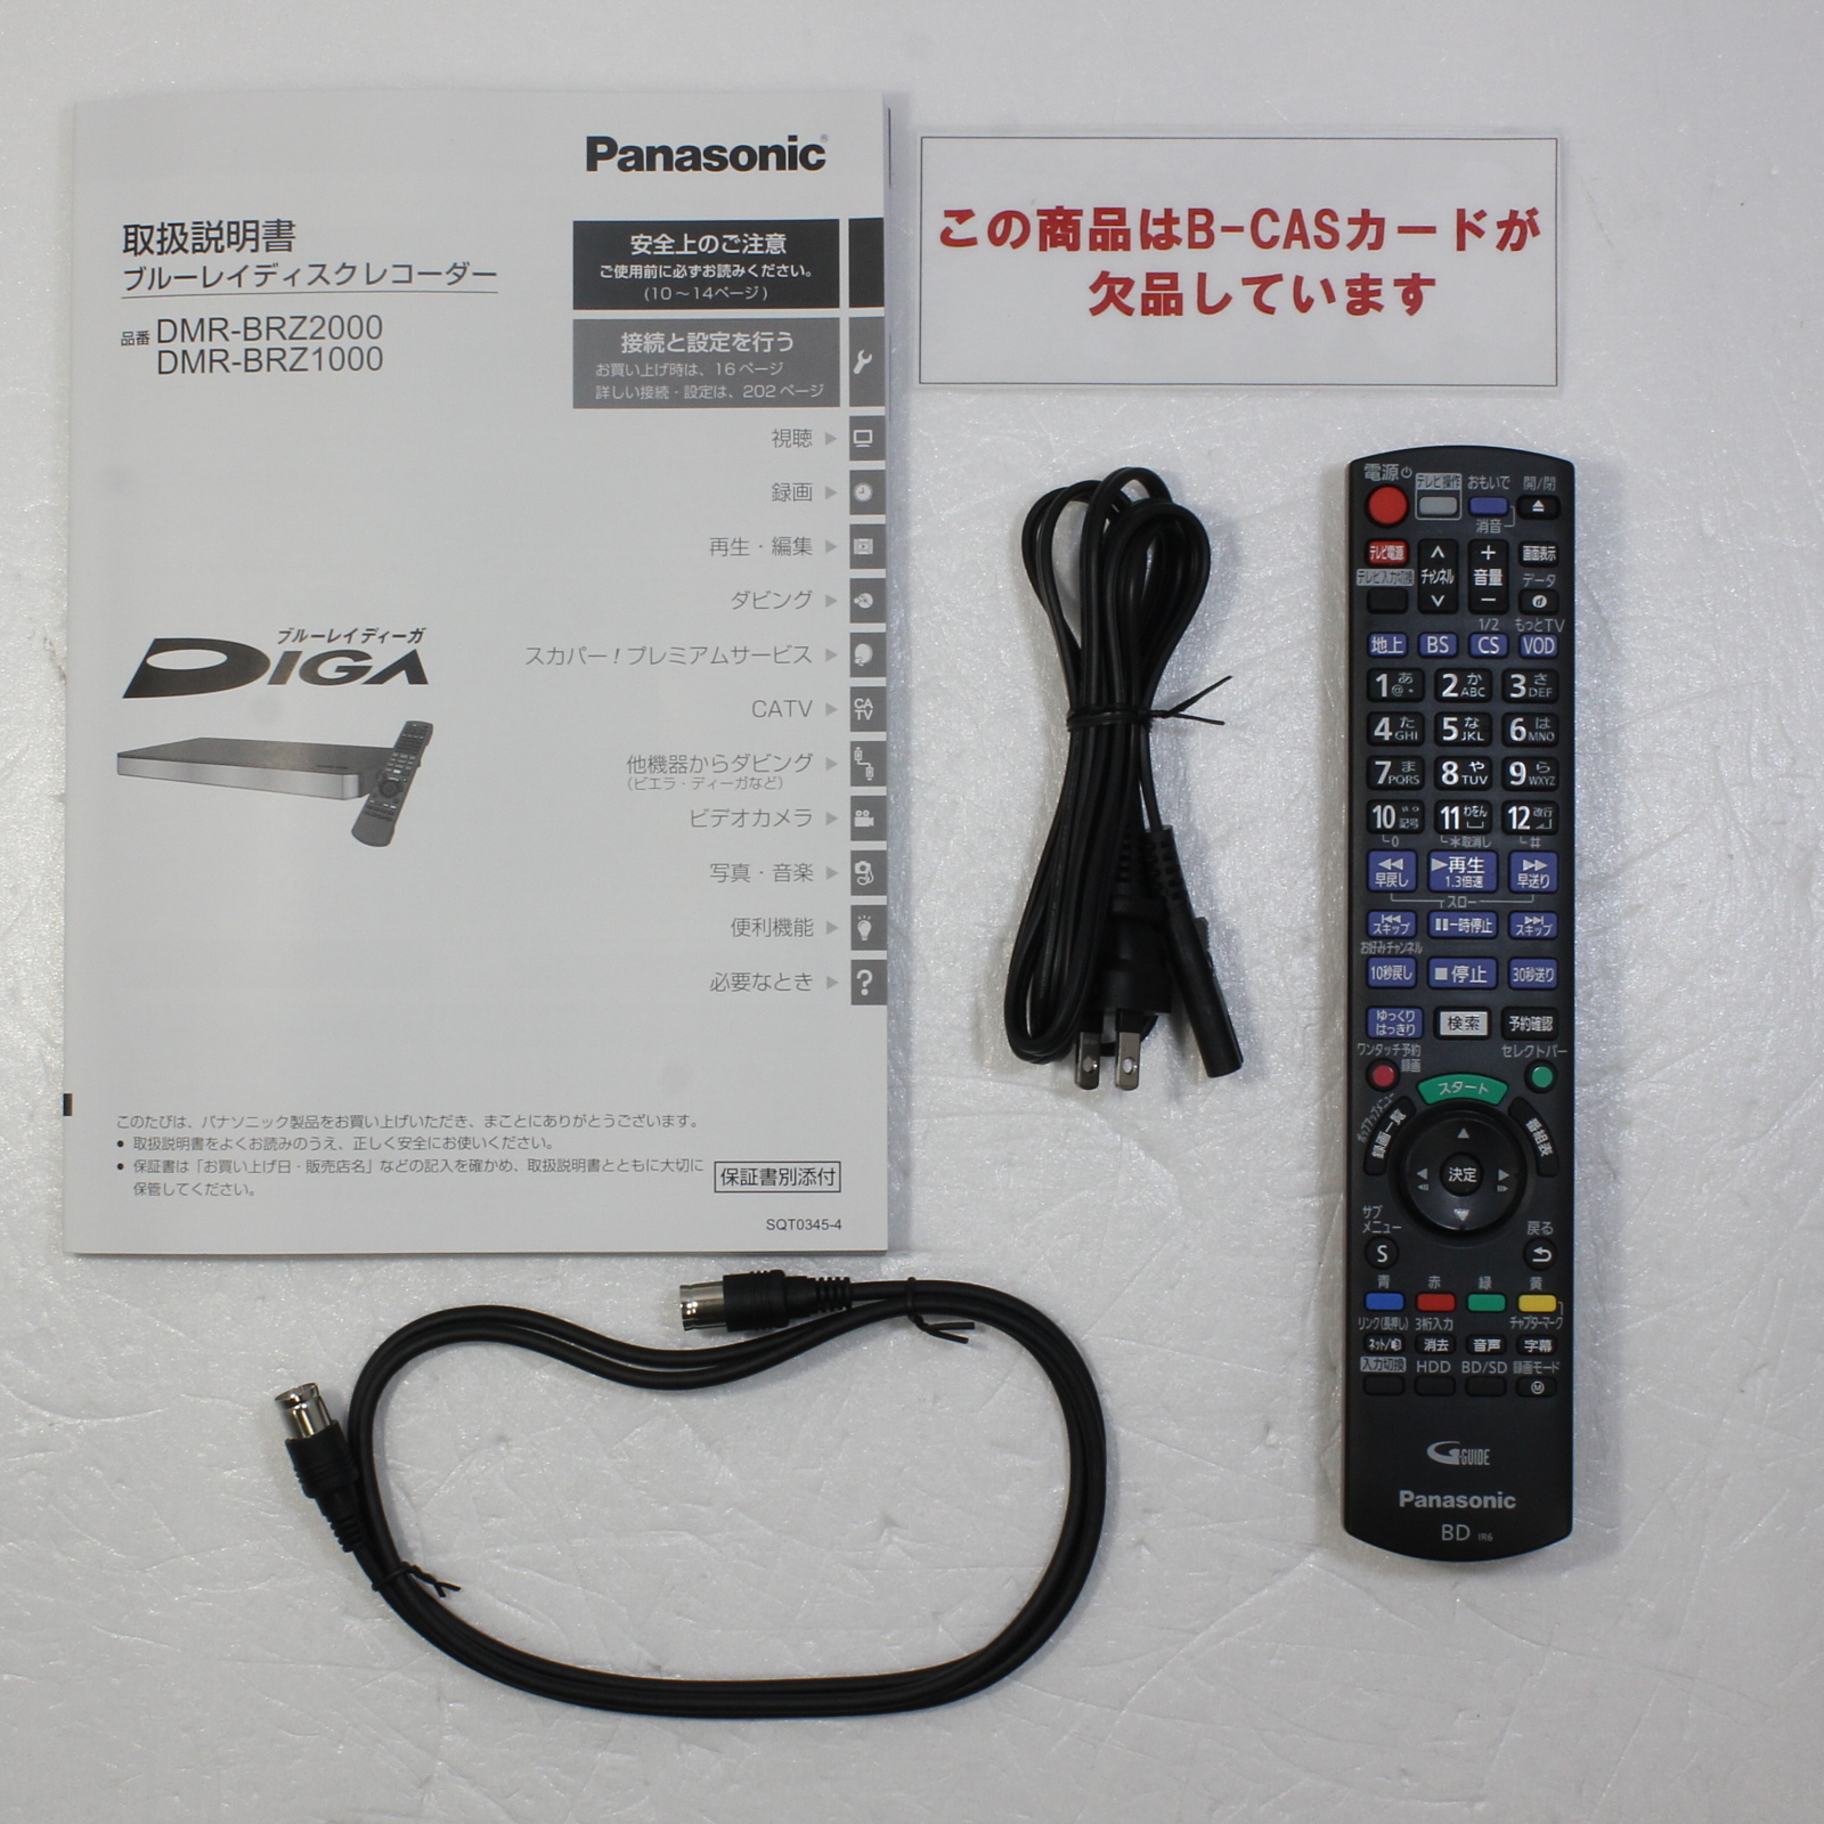 3番組同時録画 Panasonic  DMR-BRZ1000